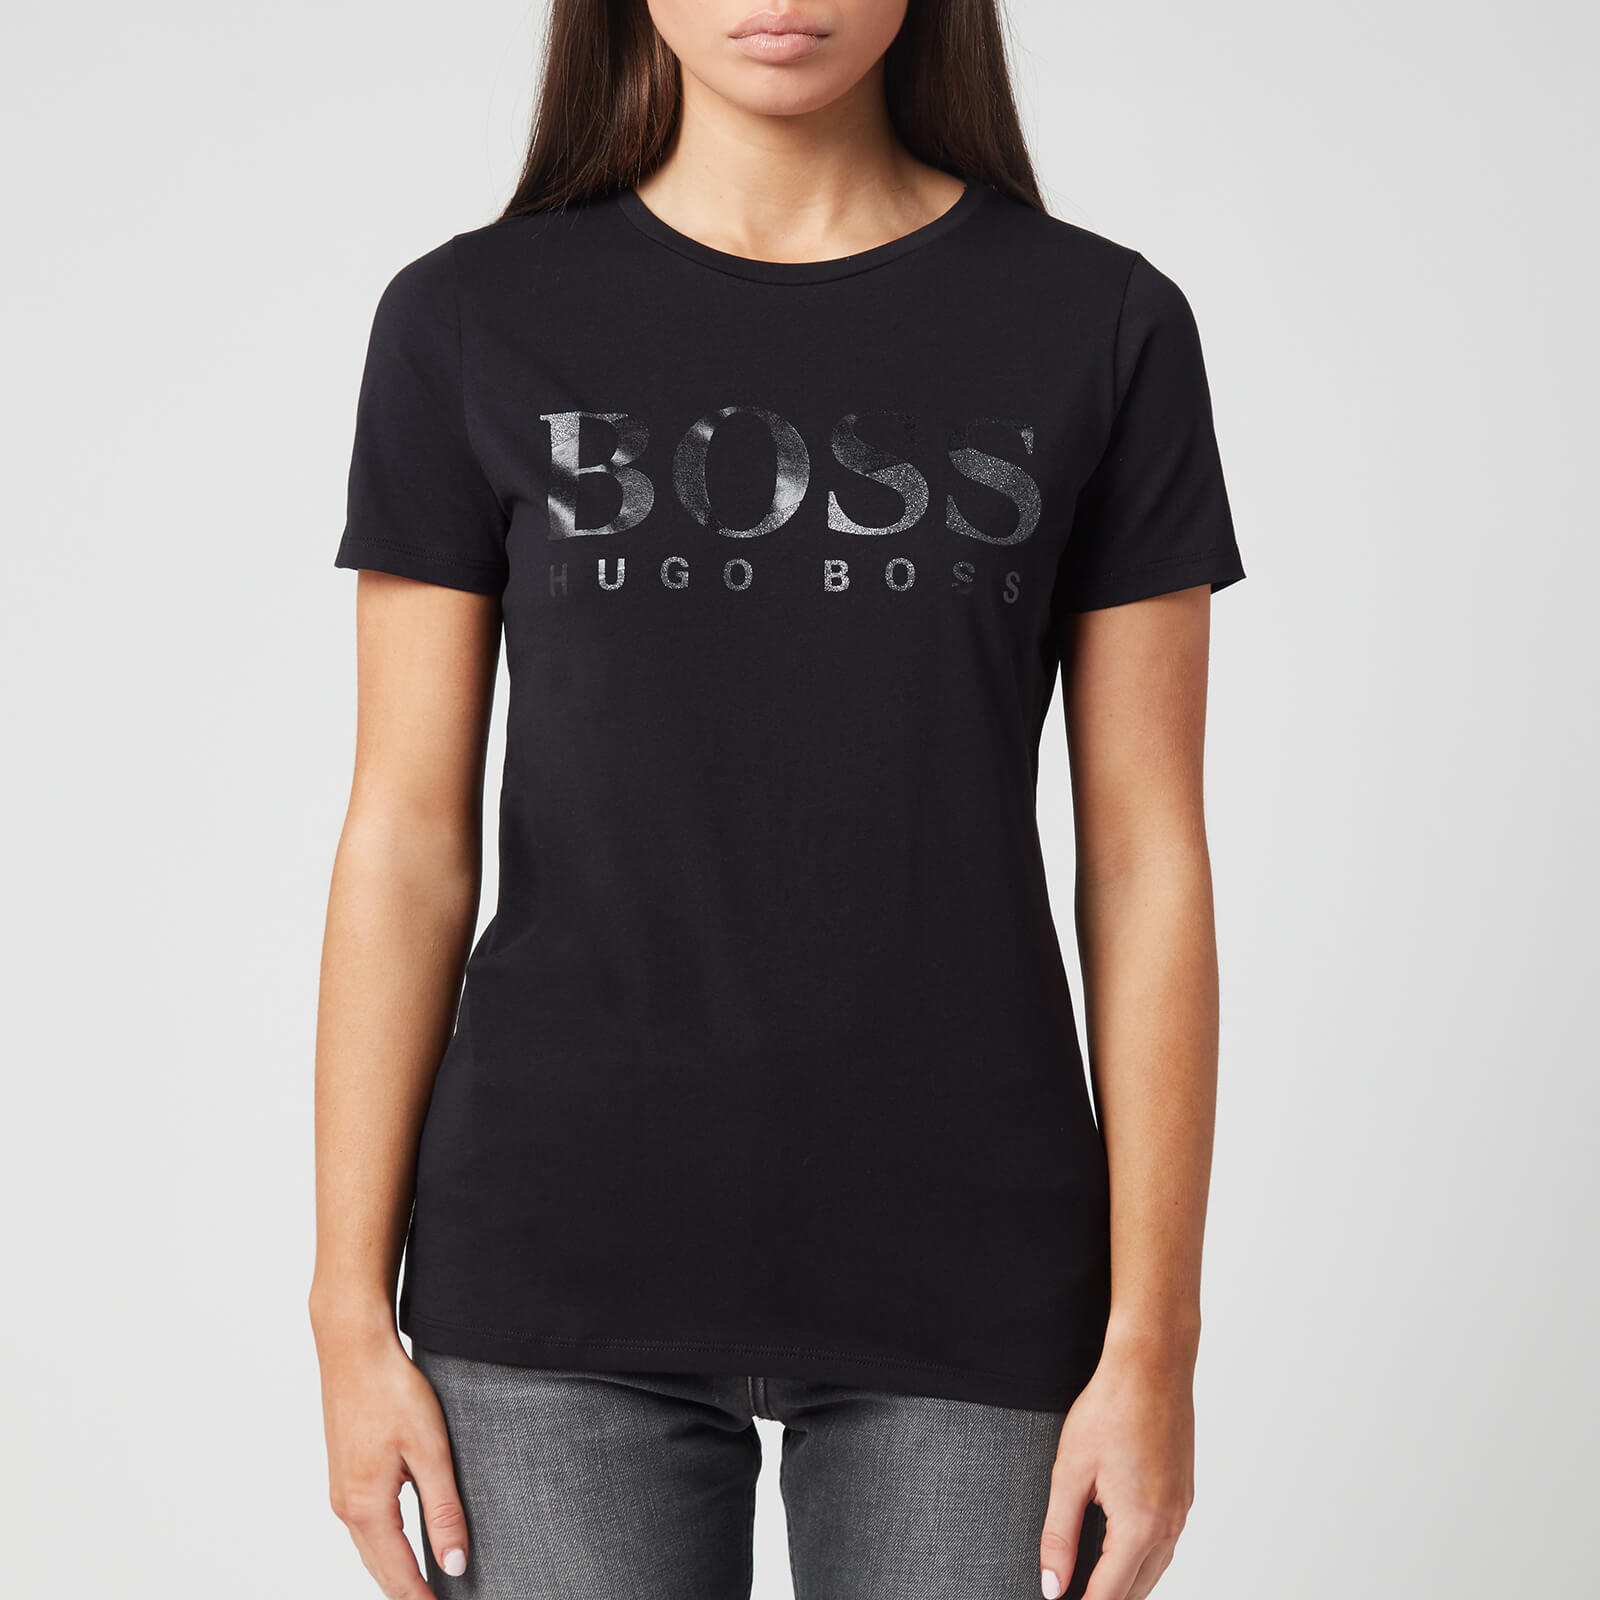 womens hugo boss t shirt sale